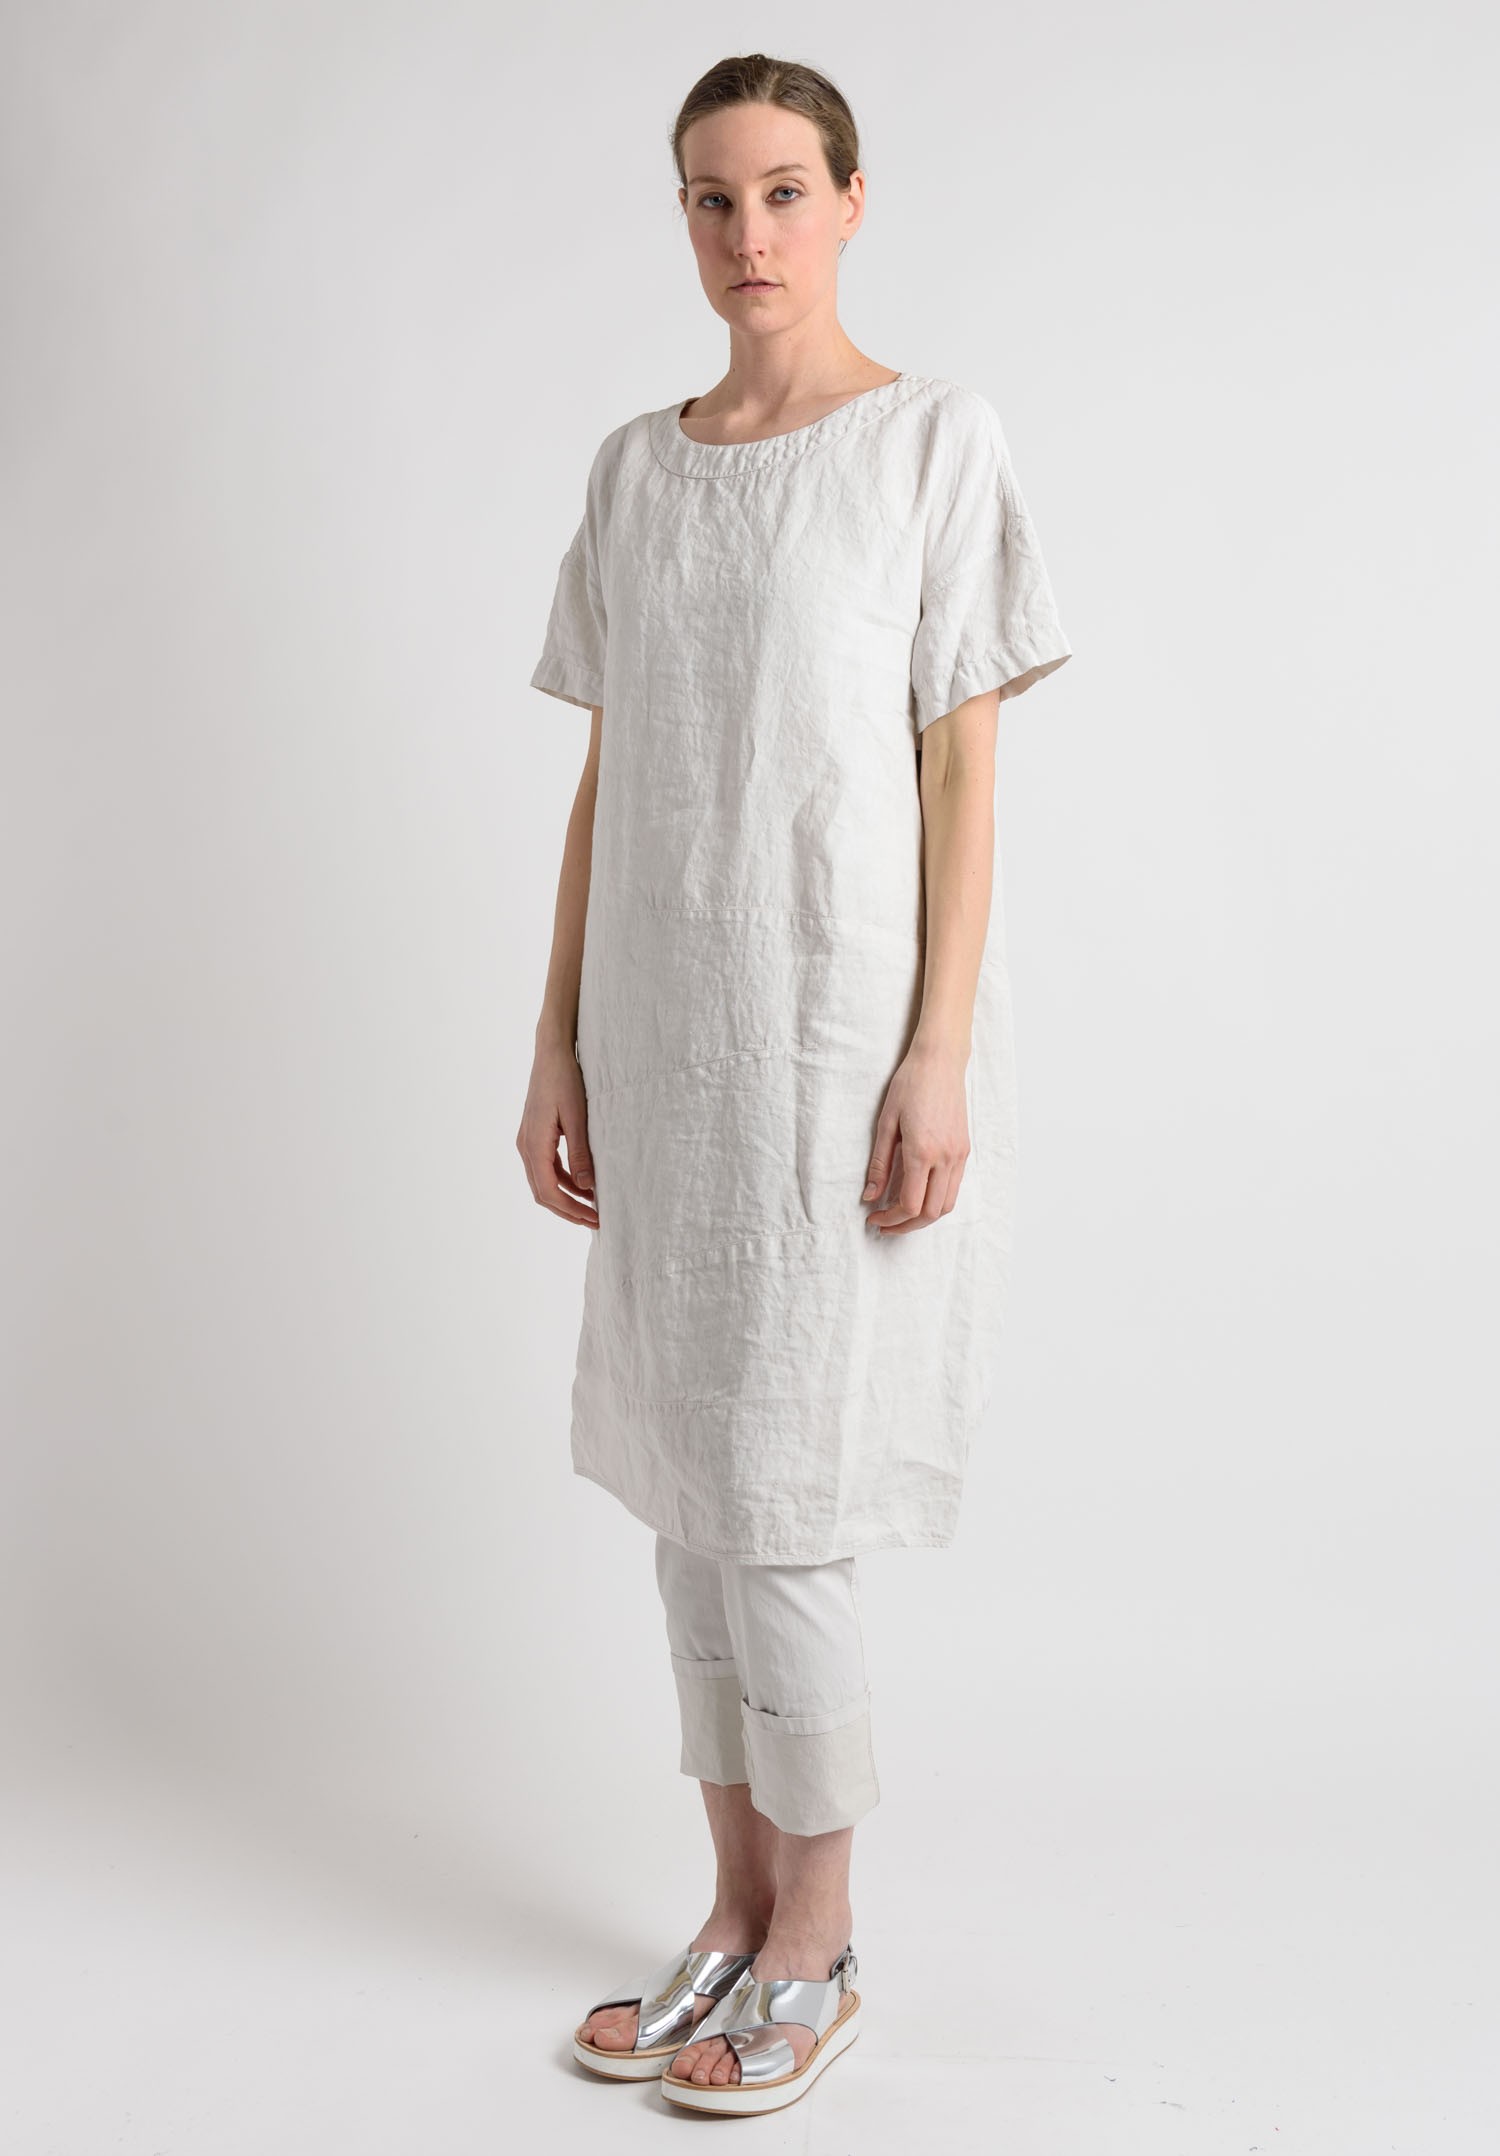 Oska Linen Short Sleeve Dress in Off White | Santa Fe Dry Goods Trippen ...